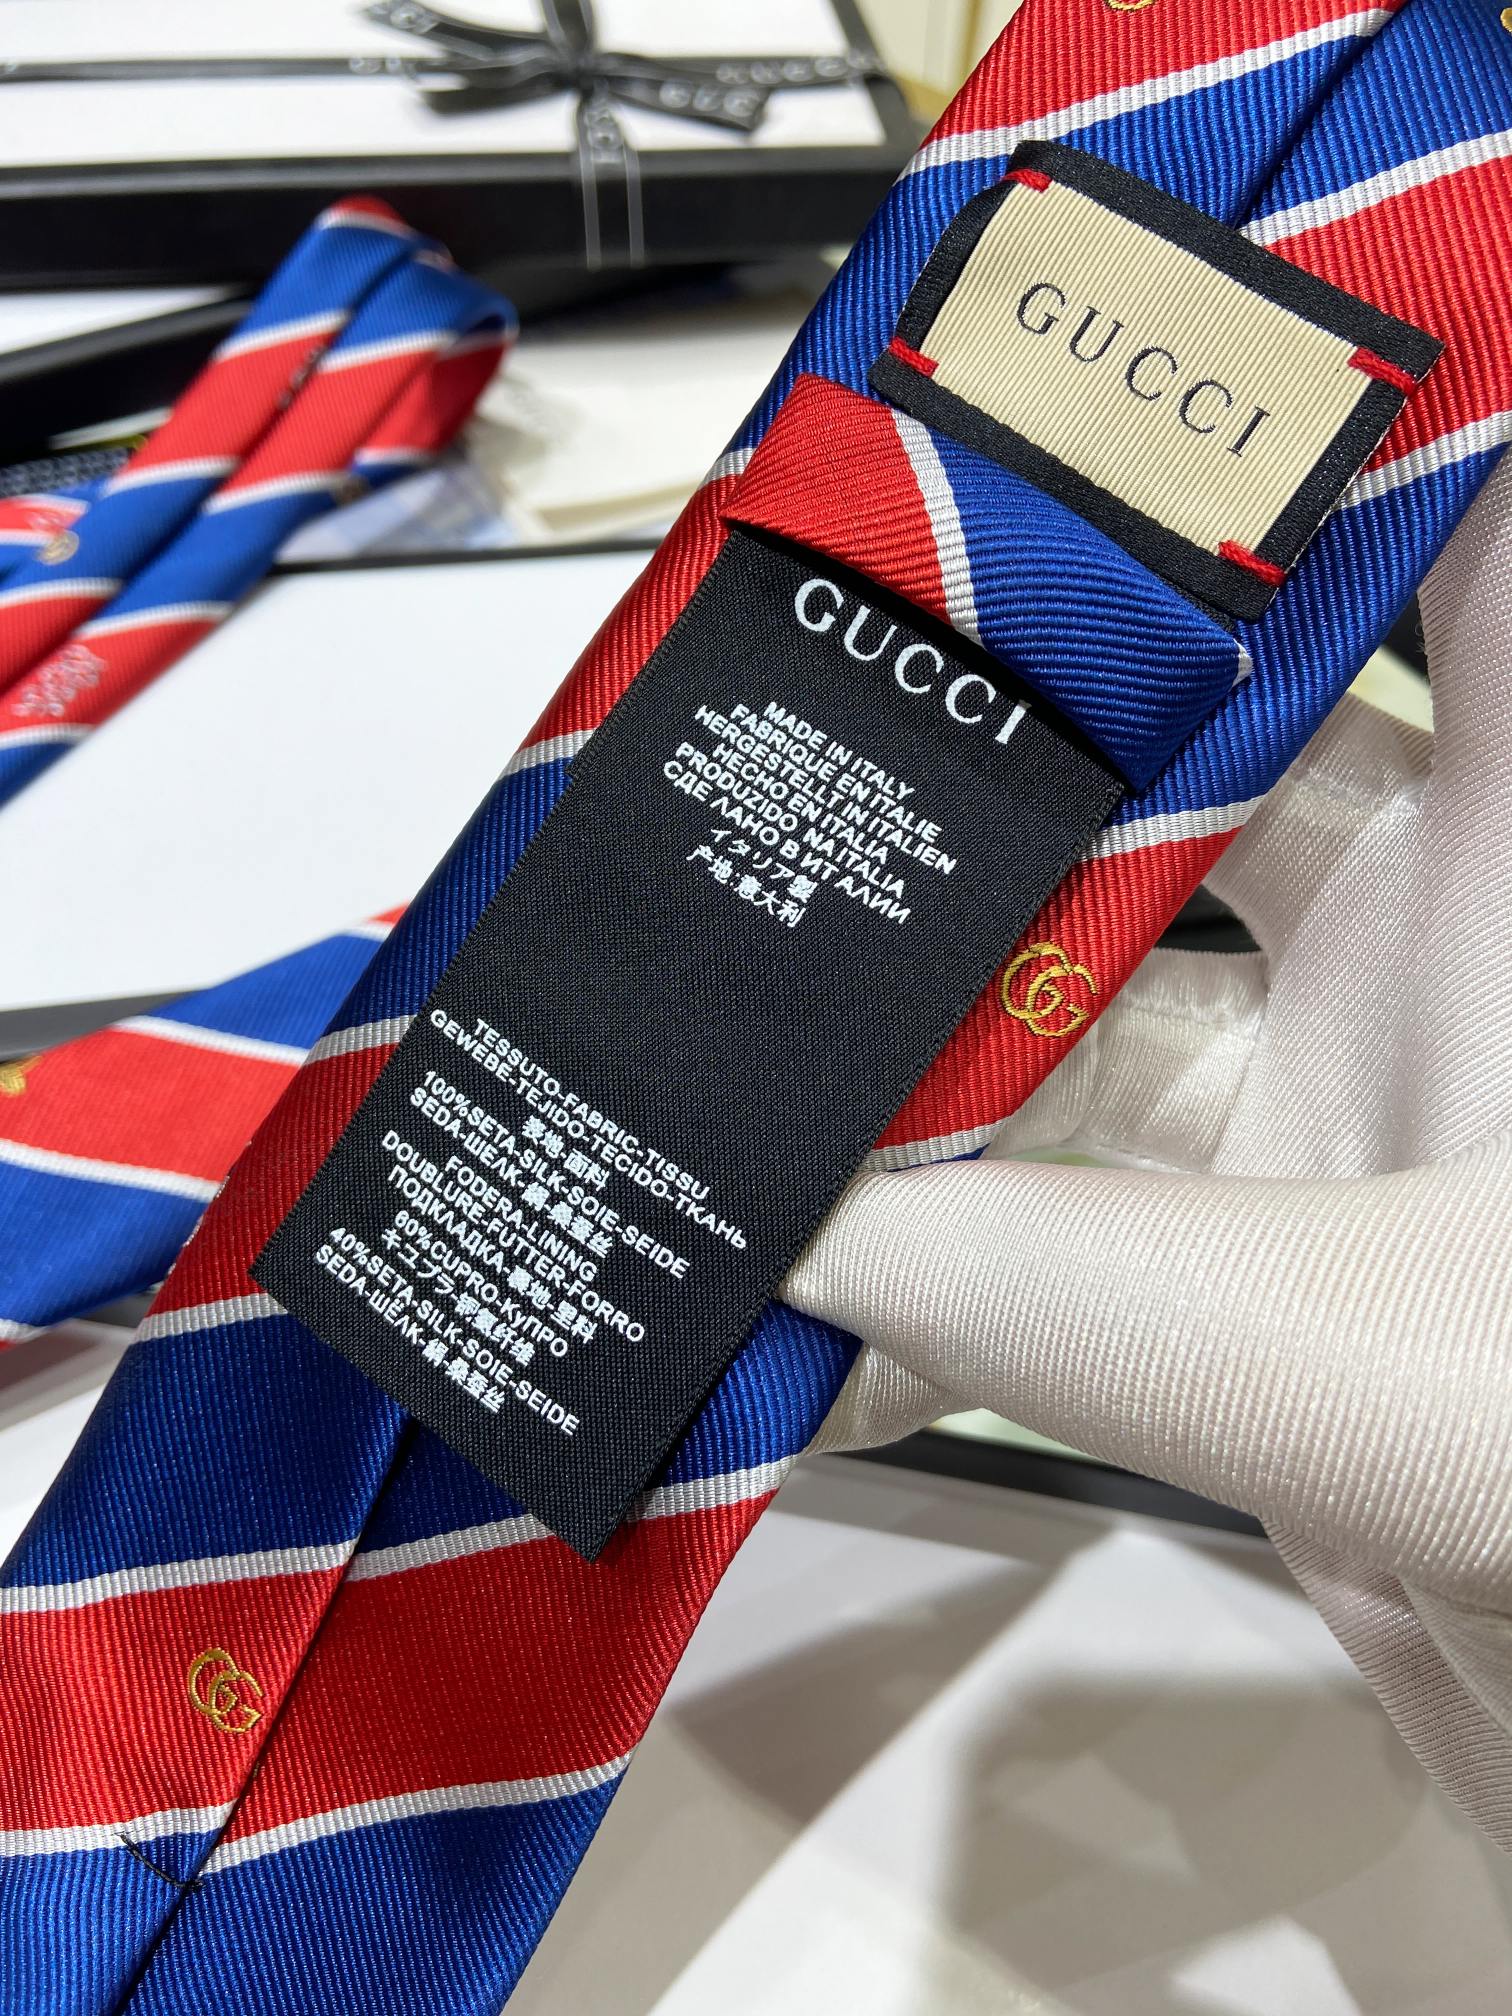 上新特价G家专柜新款男士领带稀有采用经典小G搭配交叉线条格纹展现精湛手工与时尚优雅的理想选择这款领带将标